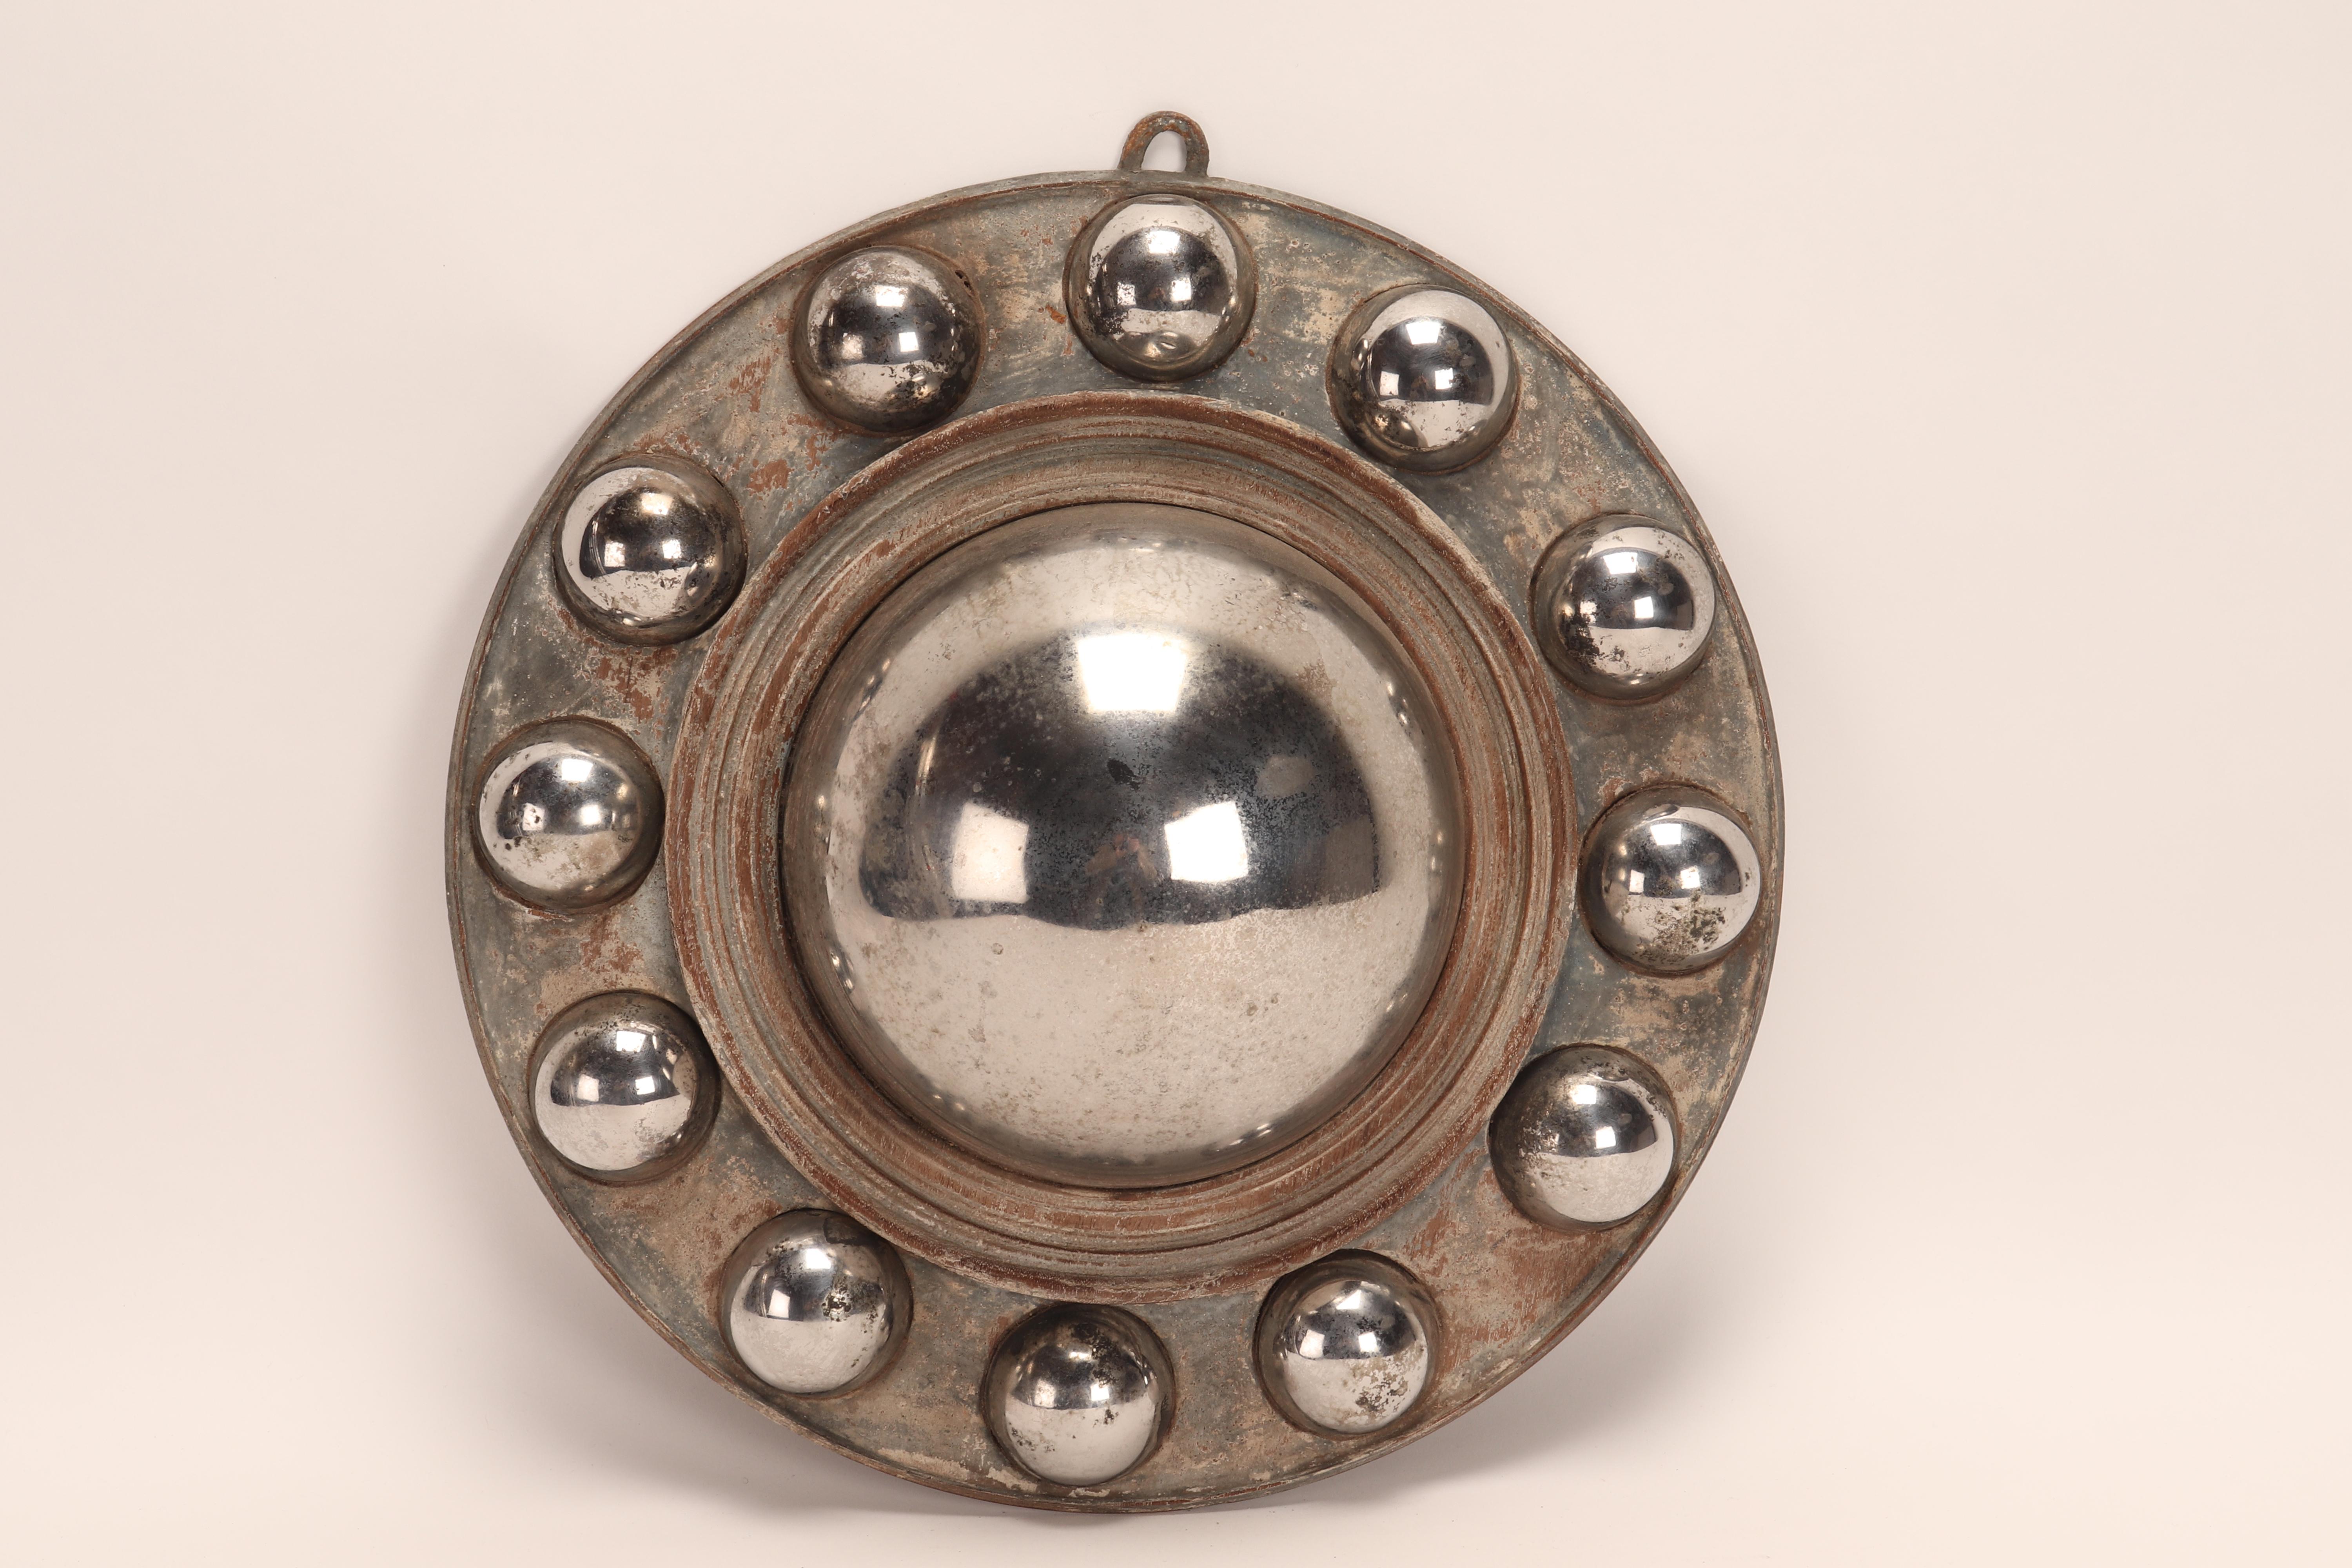 Un grand miroir central convexe en métal, avec 12 petits miroirs convexes en métal le long du bord du cadre rond. Ces miroirs convexes étaient appelés 